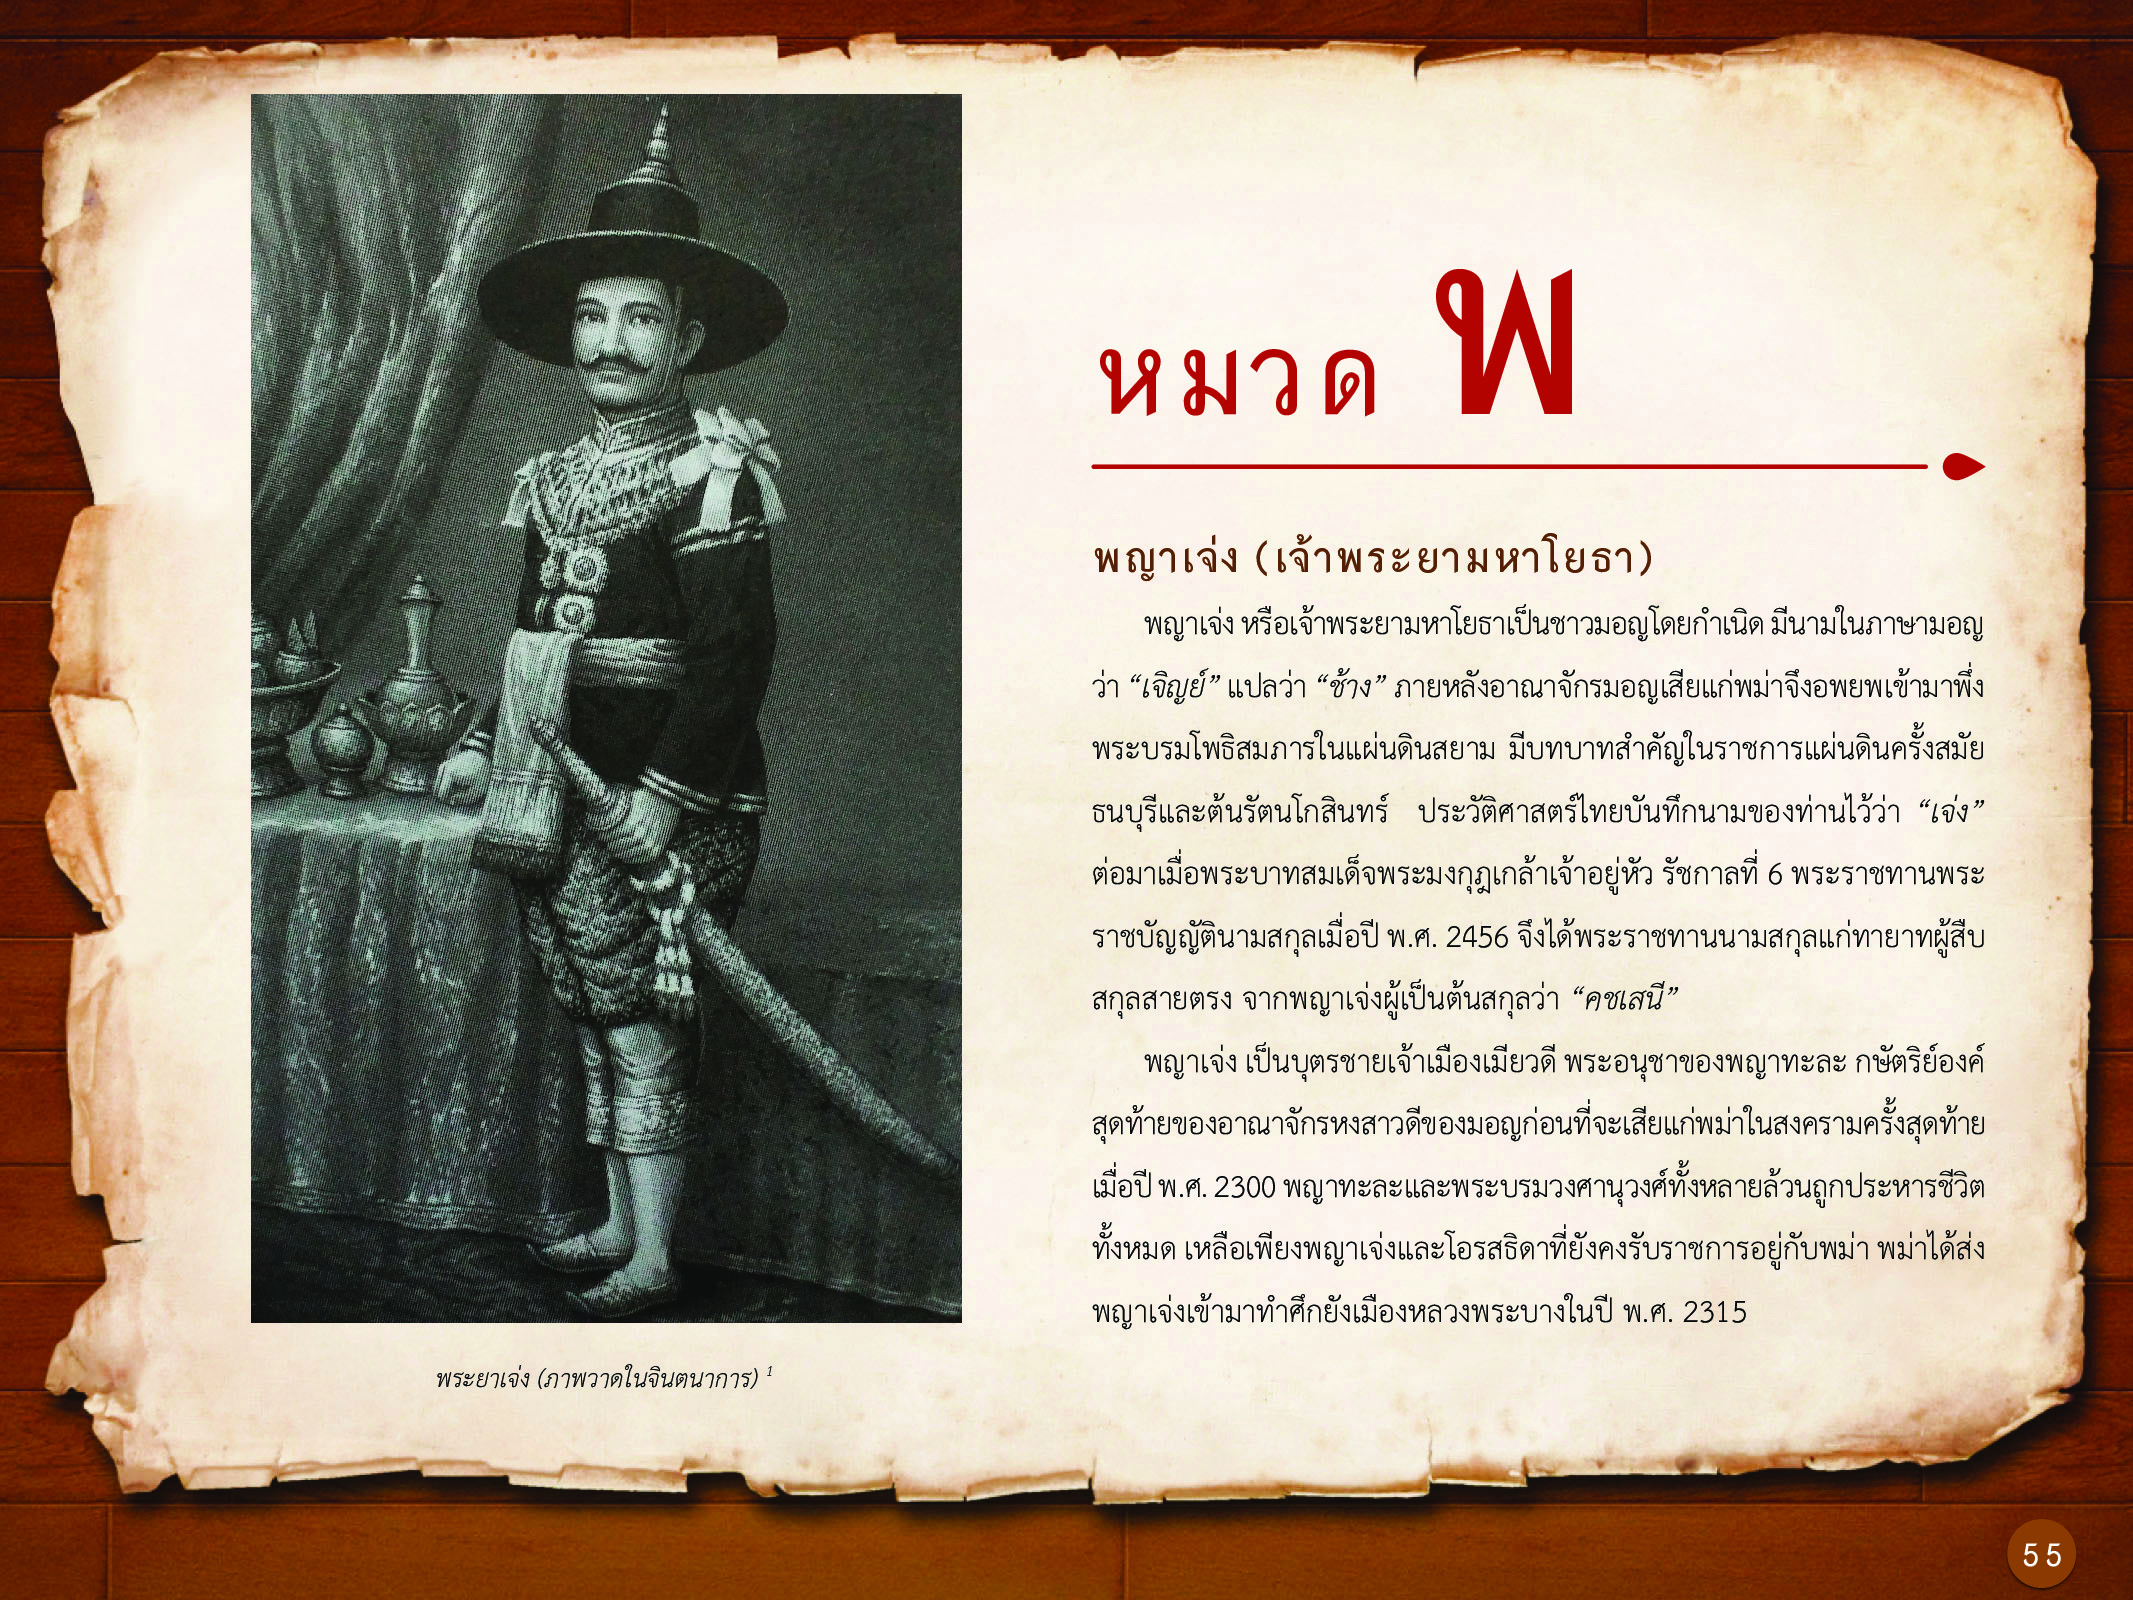 ประวัติศาสตร์กรุงธนบุรี ./images/history_dhonburi/55.jpg